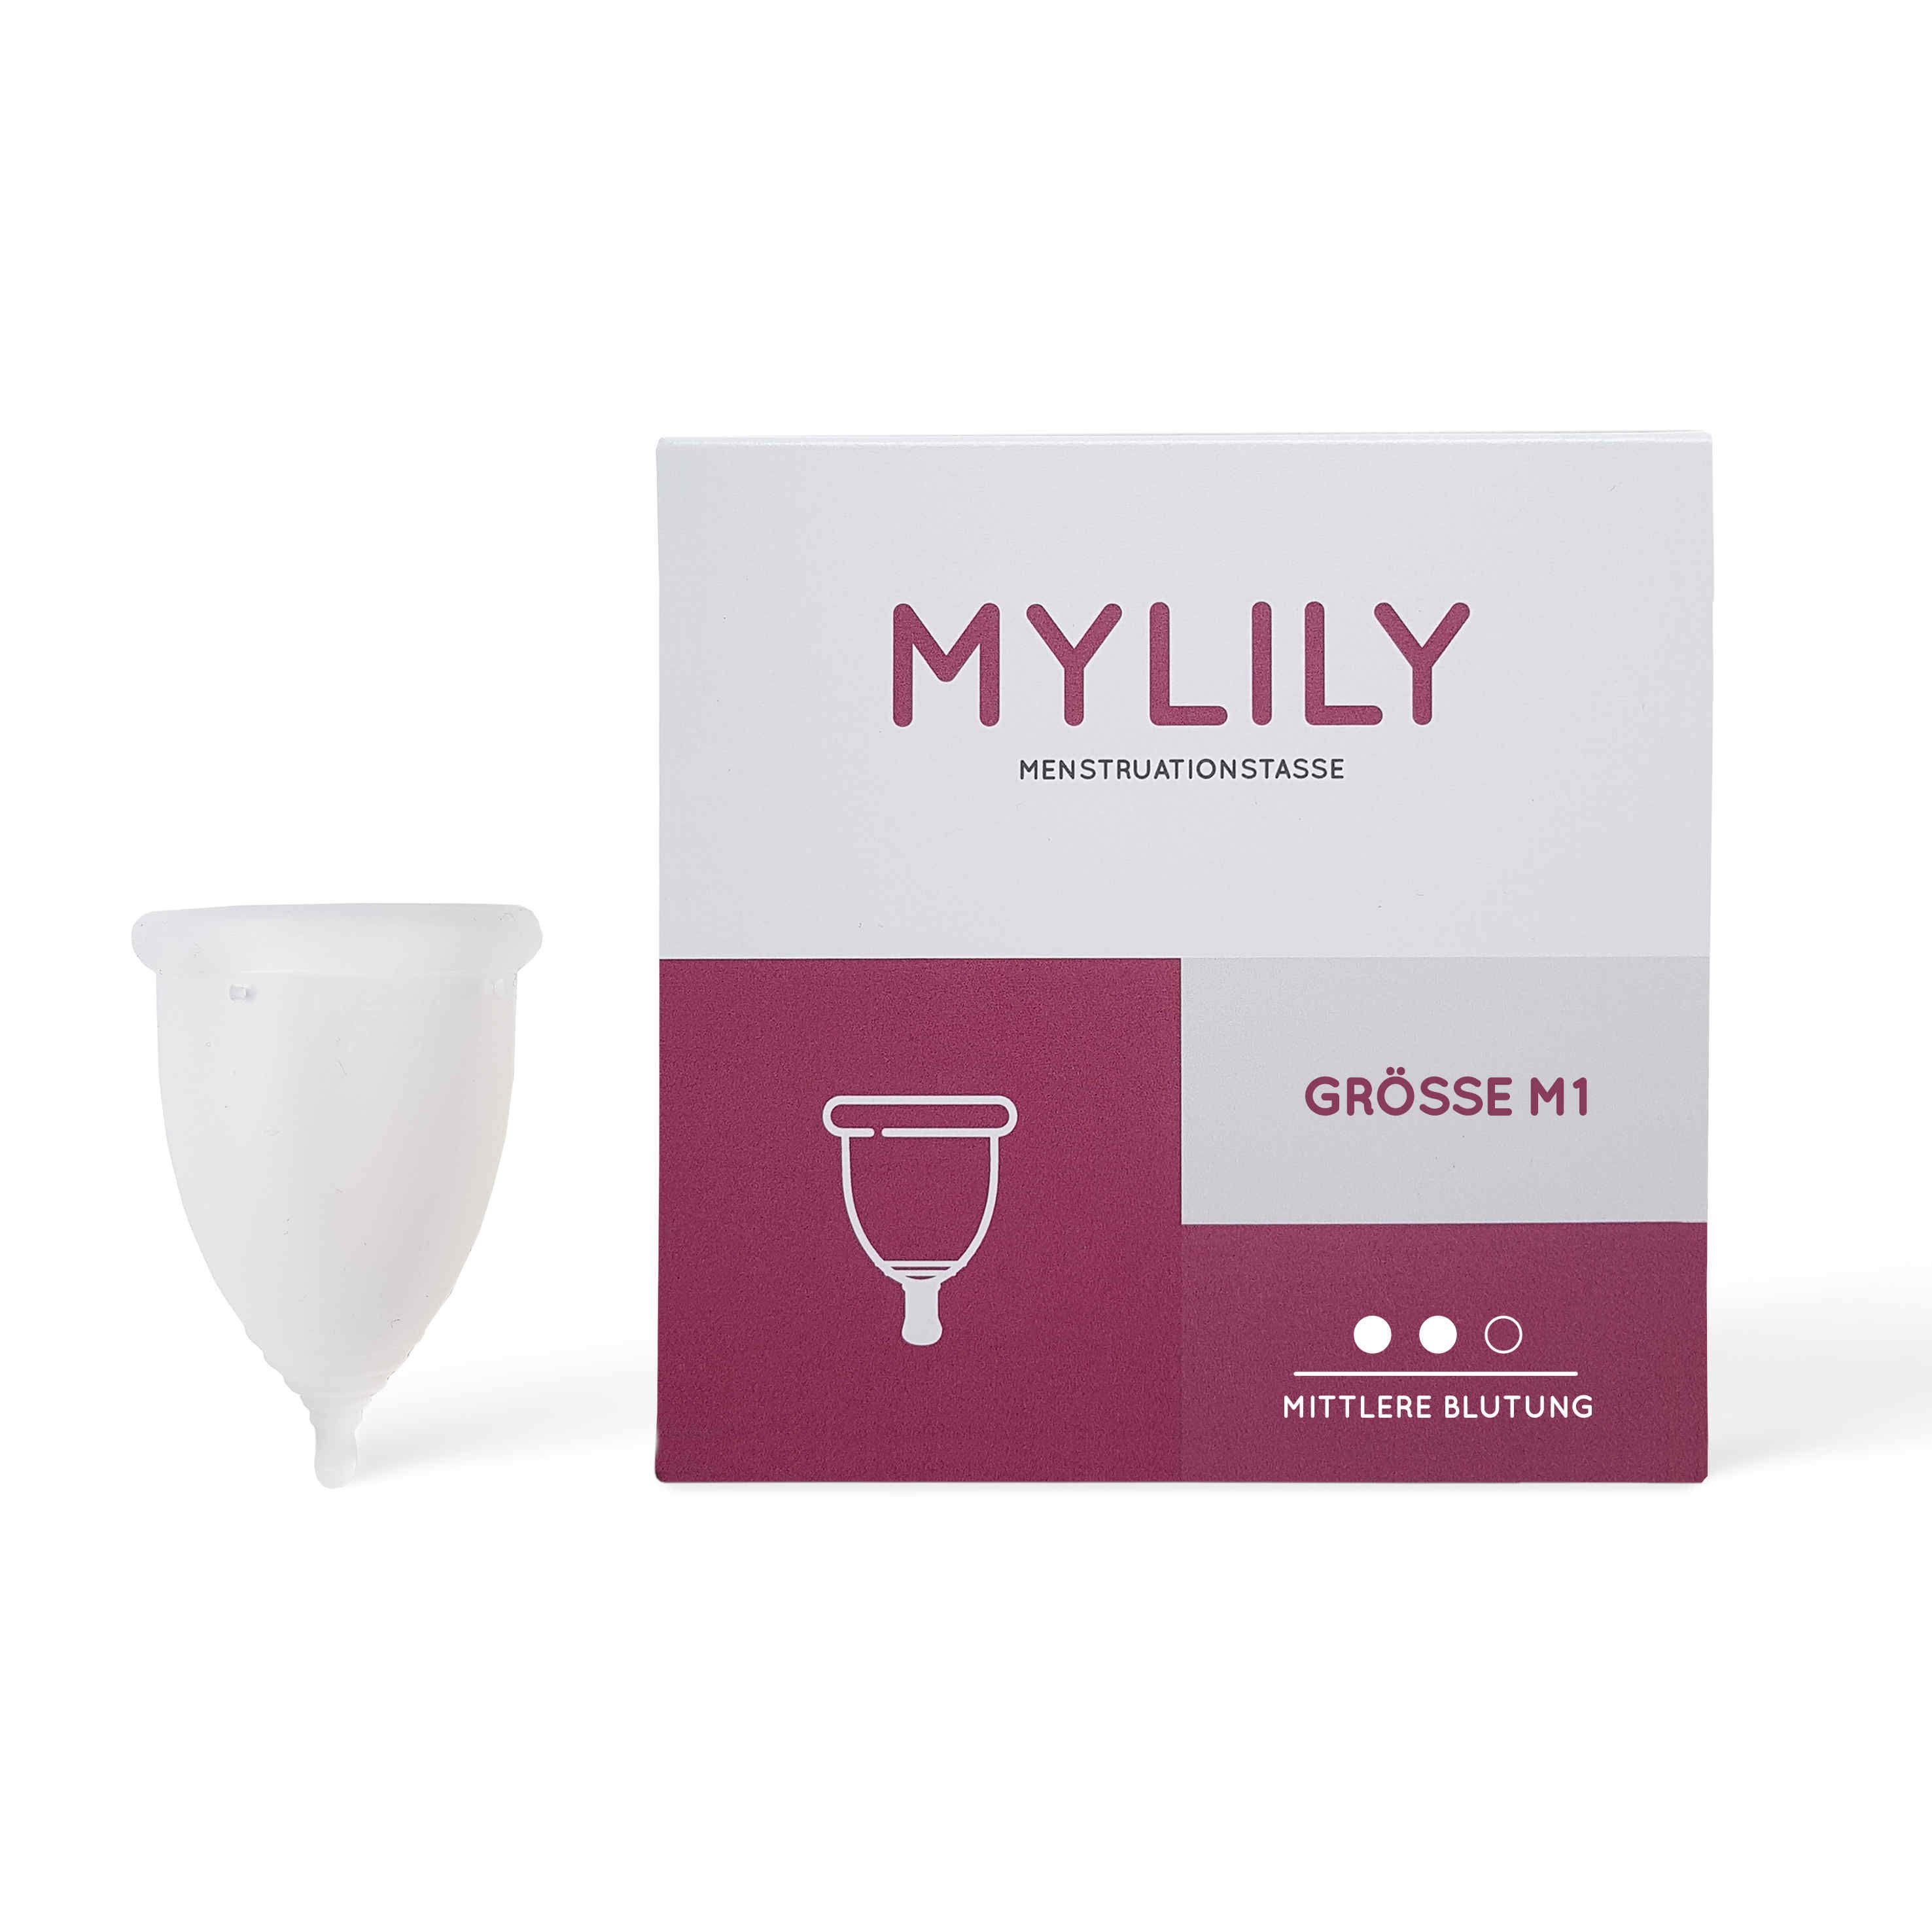 Mylily Menstruationstasse - M1